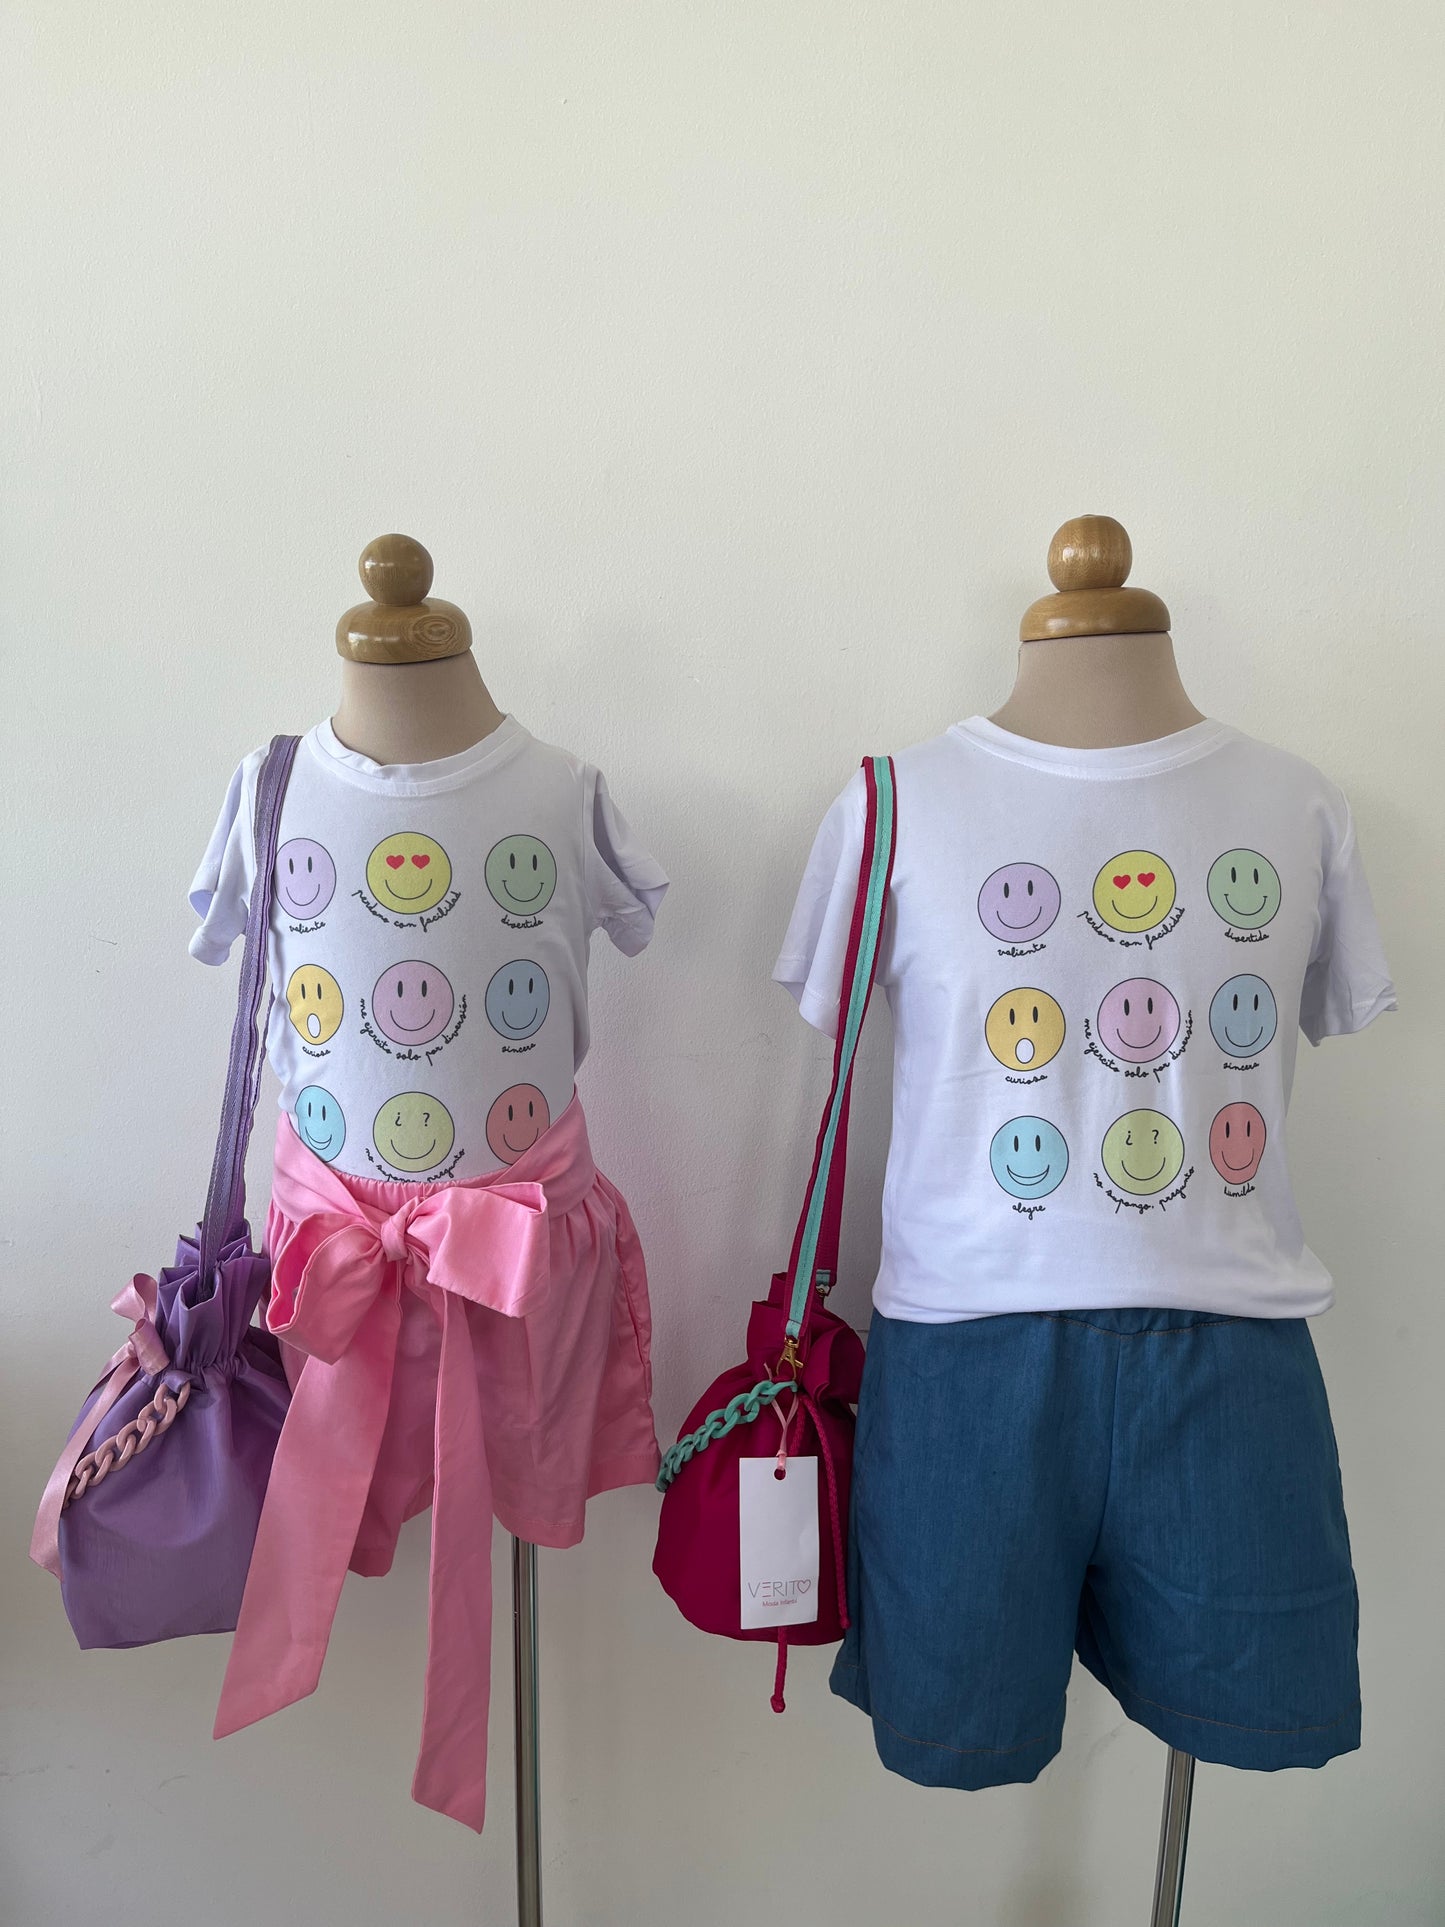 outfits de short en tela tipo denim liviano y short rosado con camisetas de caritas felices de varios colores y mochilas para niñas